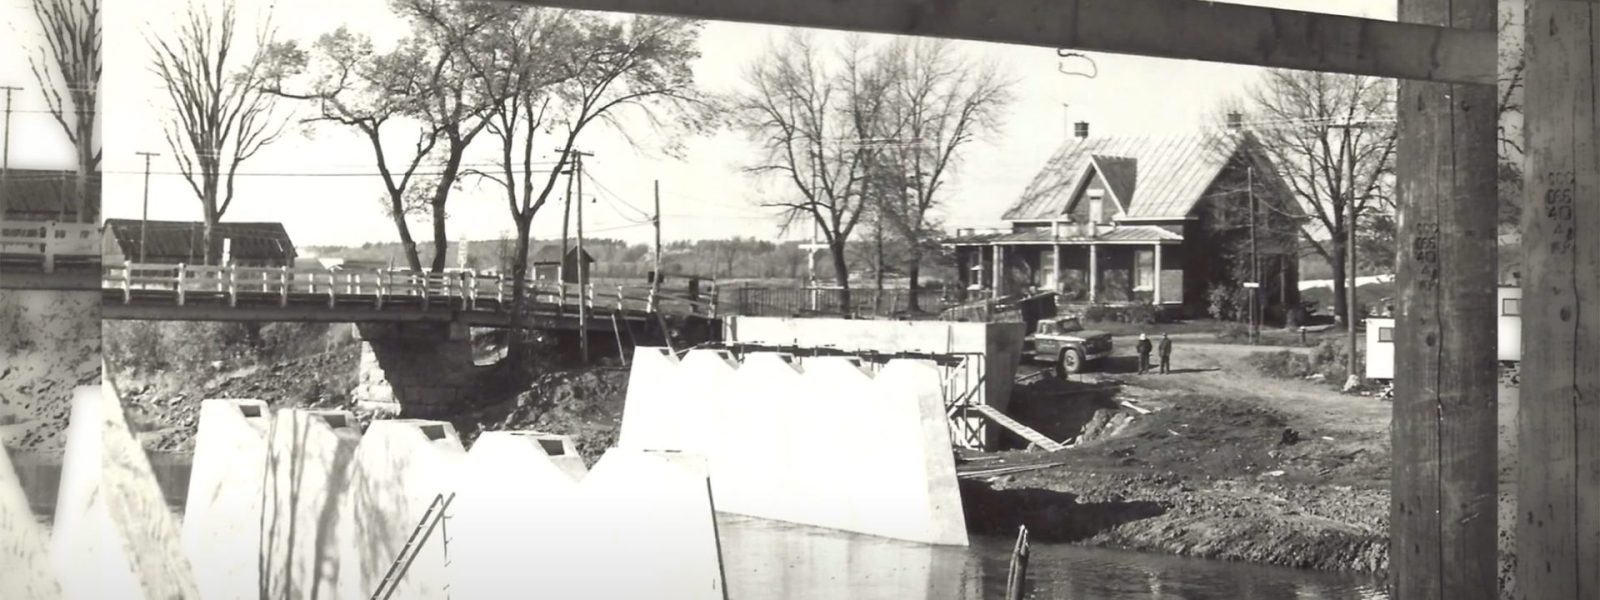 Construction du nouveau pont Mathe, 1966